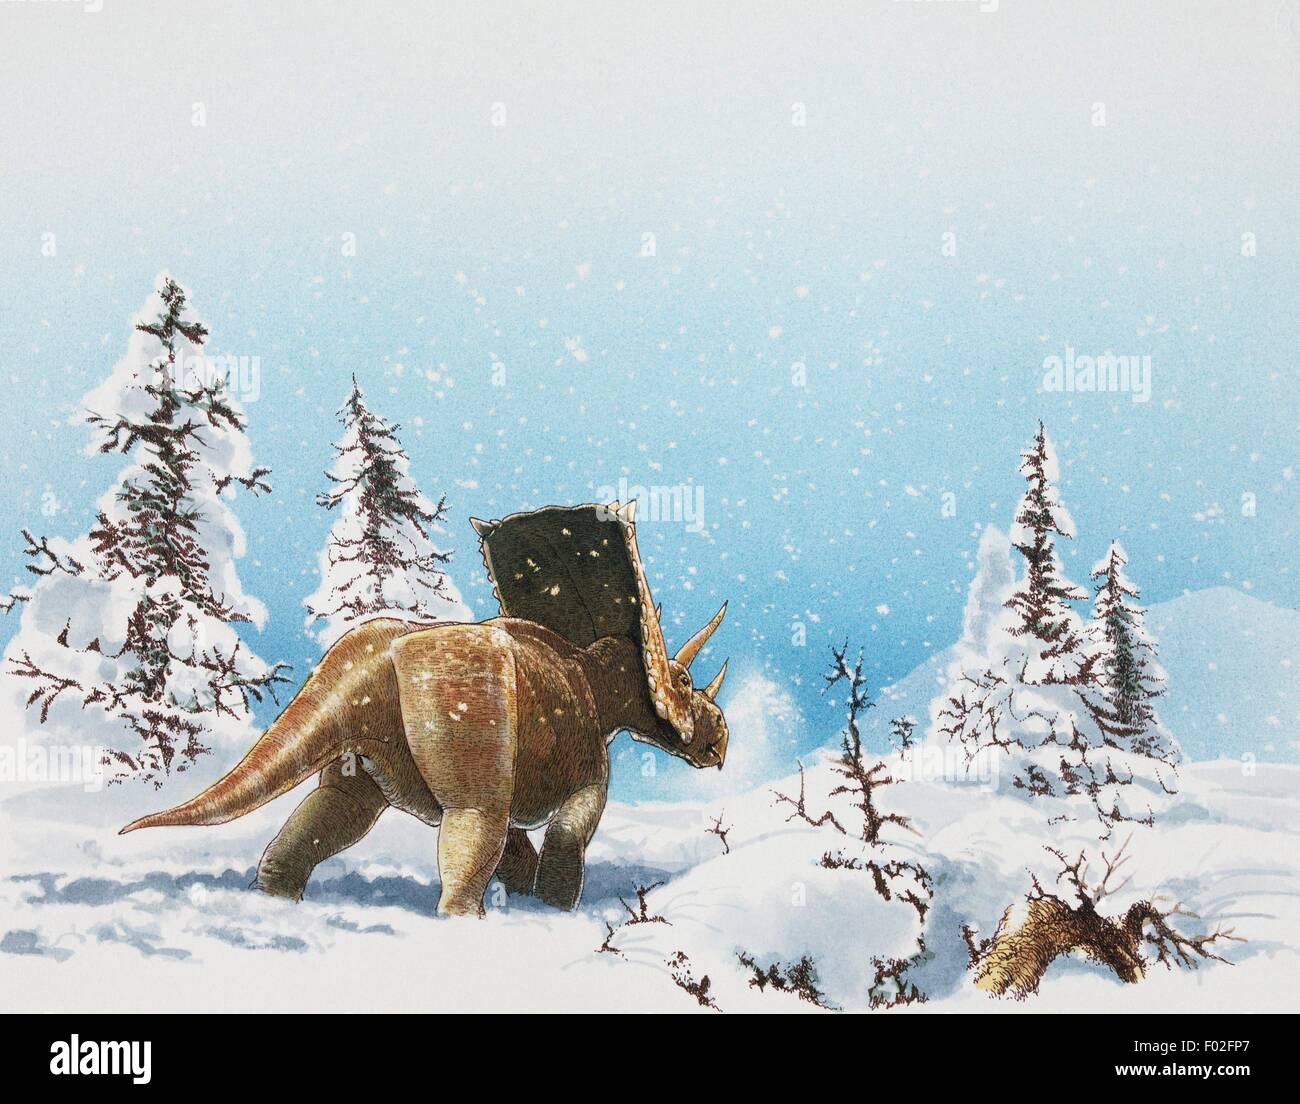 Chasmosaurus, Ceratopsidae, dans la neige, Crétacé. Illustration de James Robins. Banque D'Images